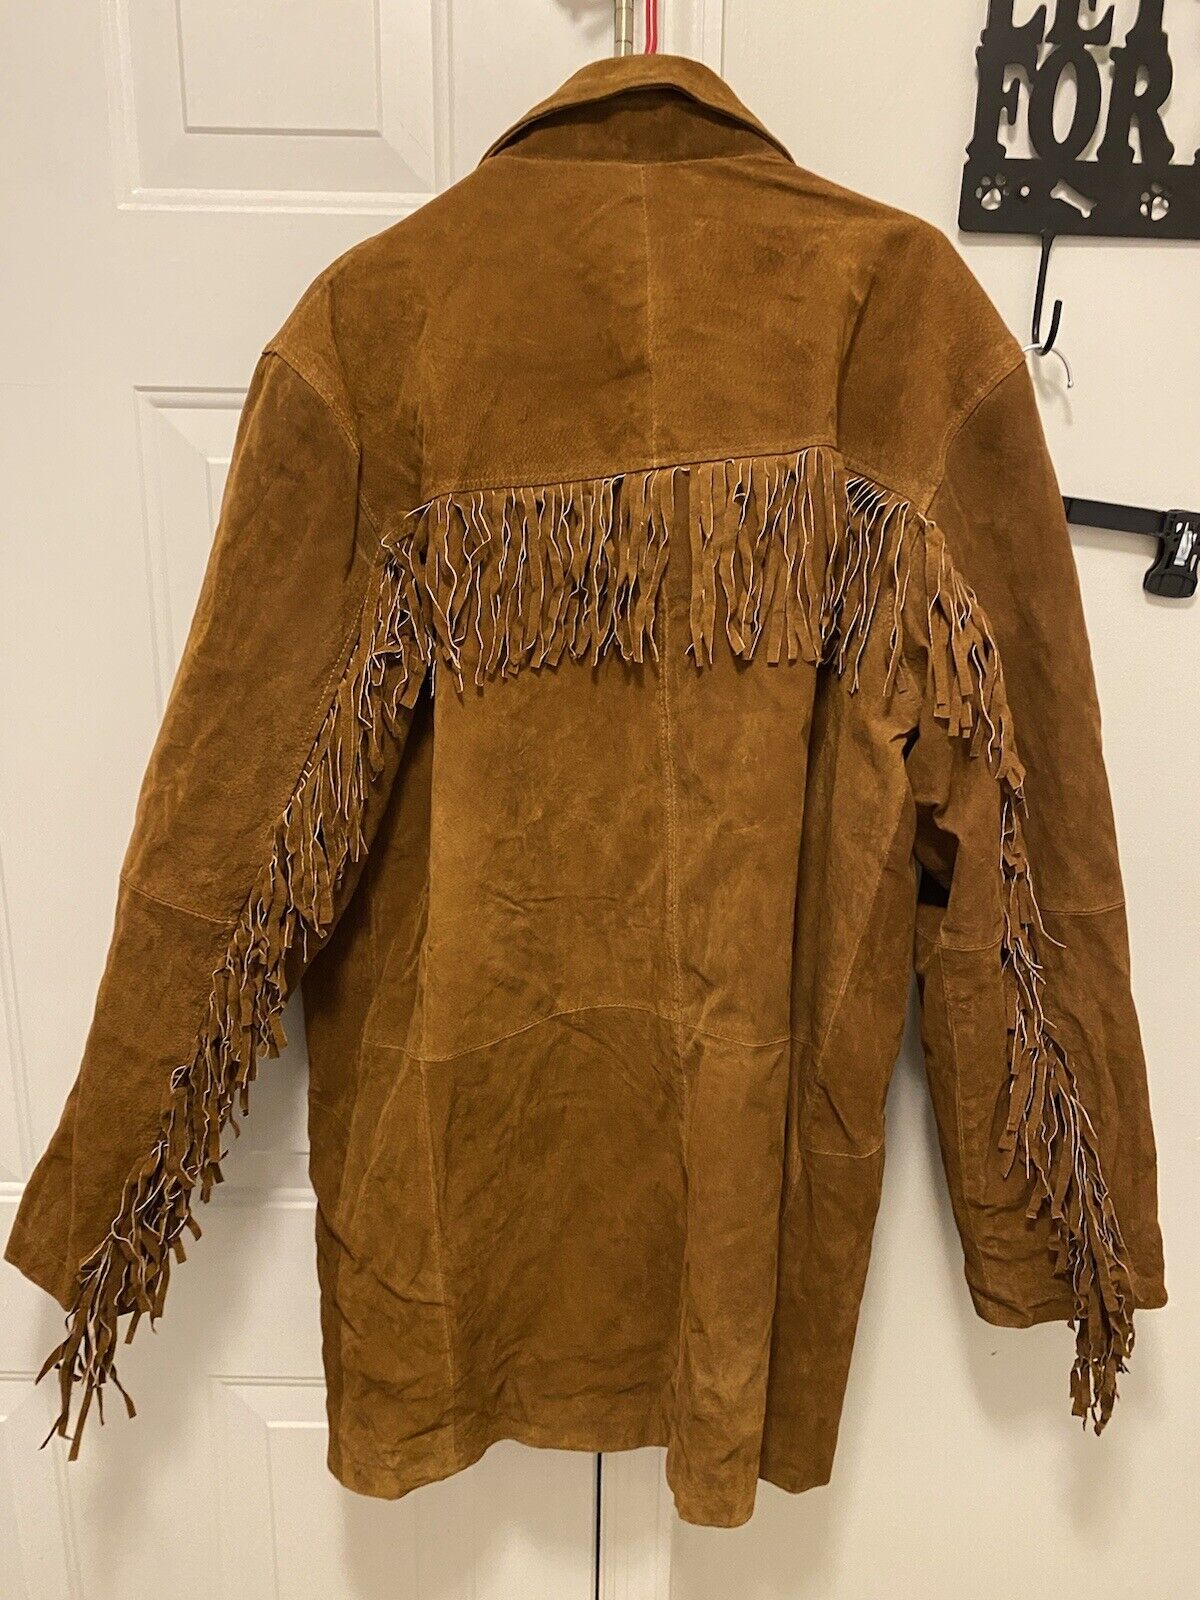 KingSize Tan Suede Leather Fringed Jacket Large B… - image 4